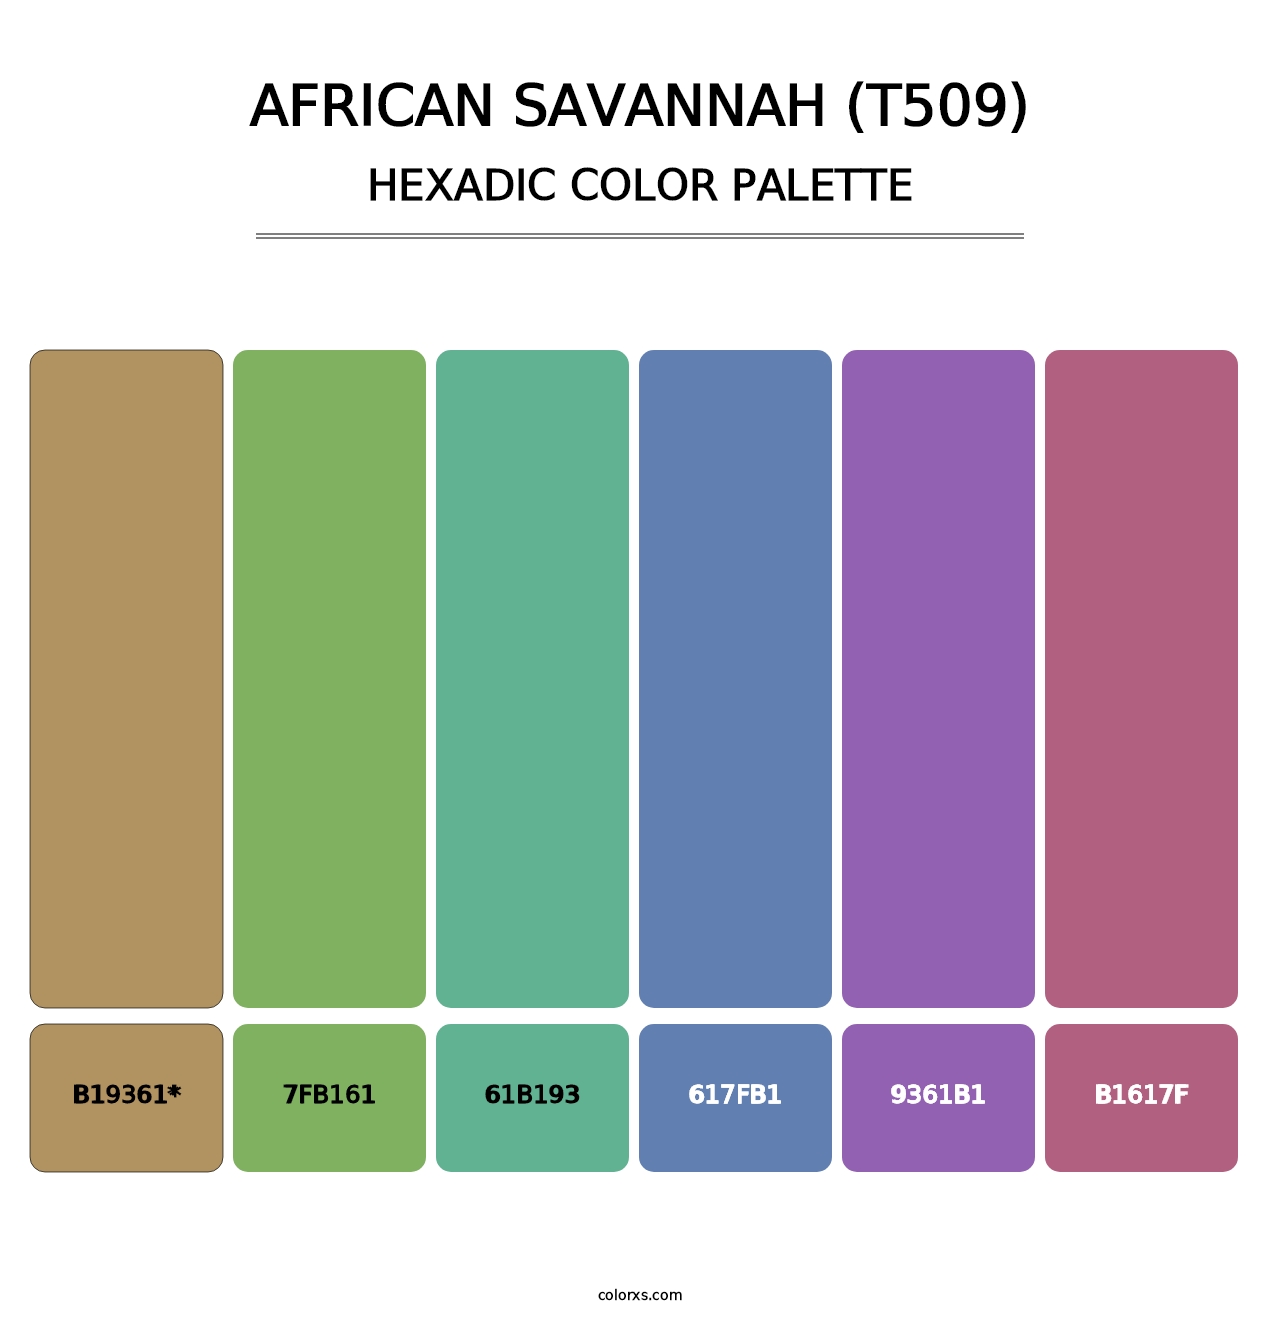 African Savannah (T509) - Hexadic Color Palette